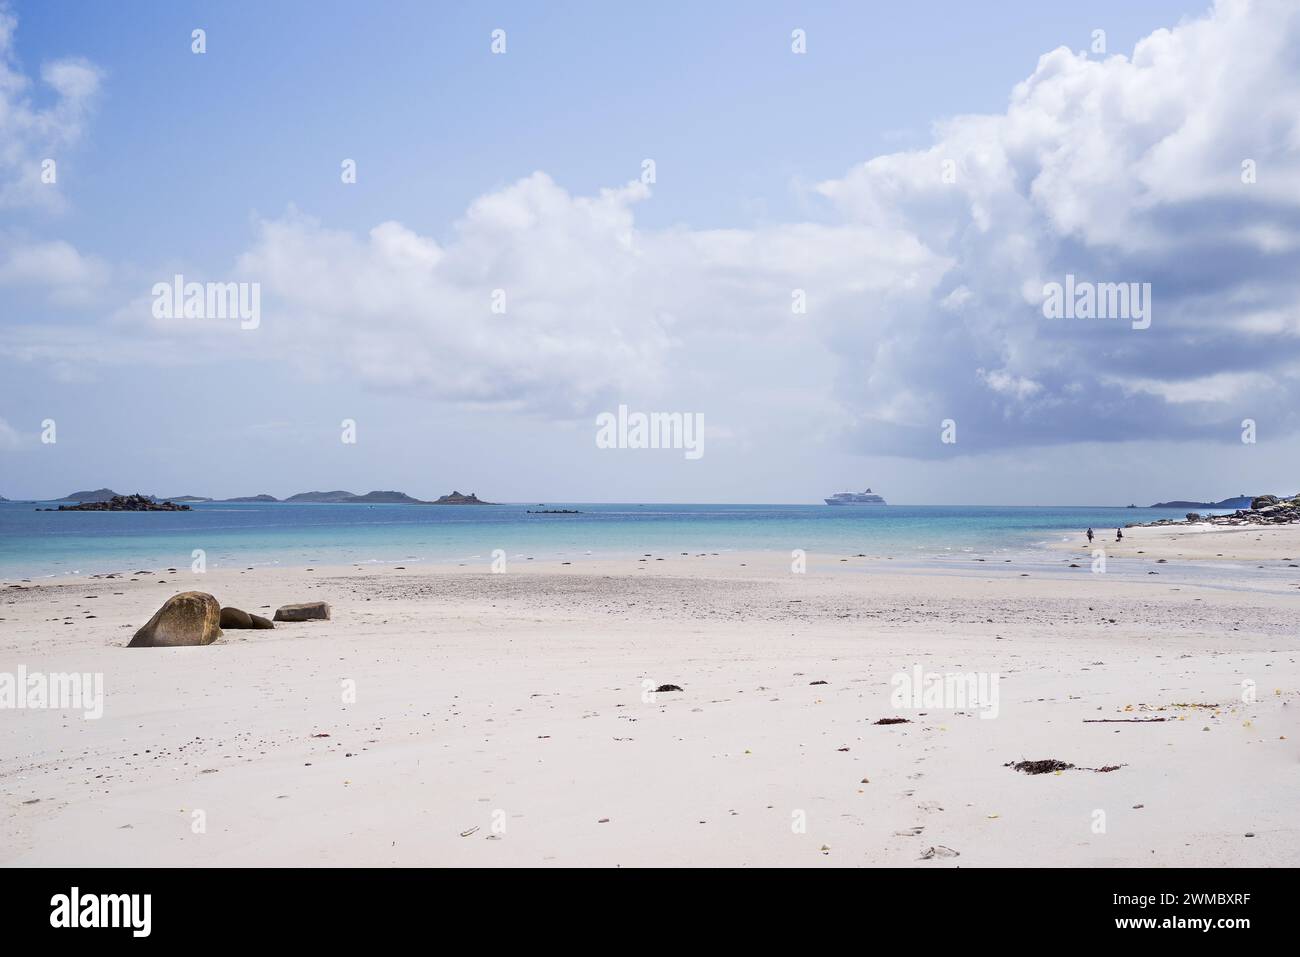 Wite plages de sable et mers Azur sur l'île de Tresco - îles de Scilly, Royaume-Uni Banque D'Images